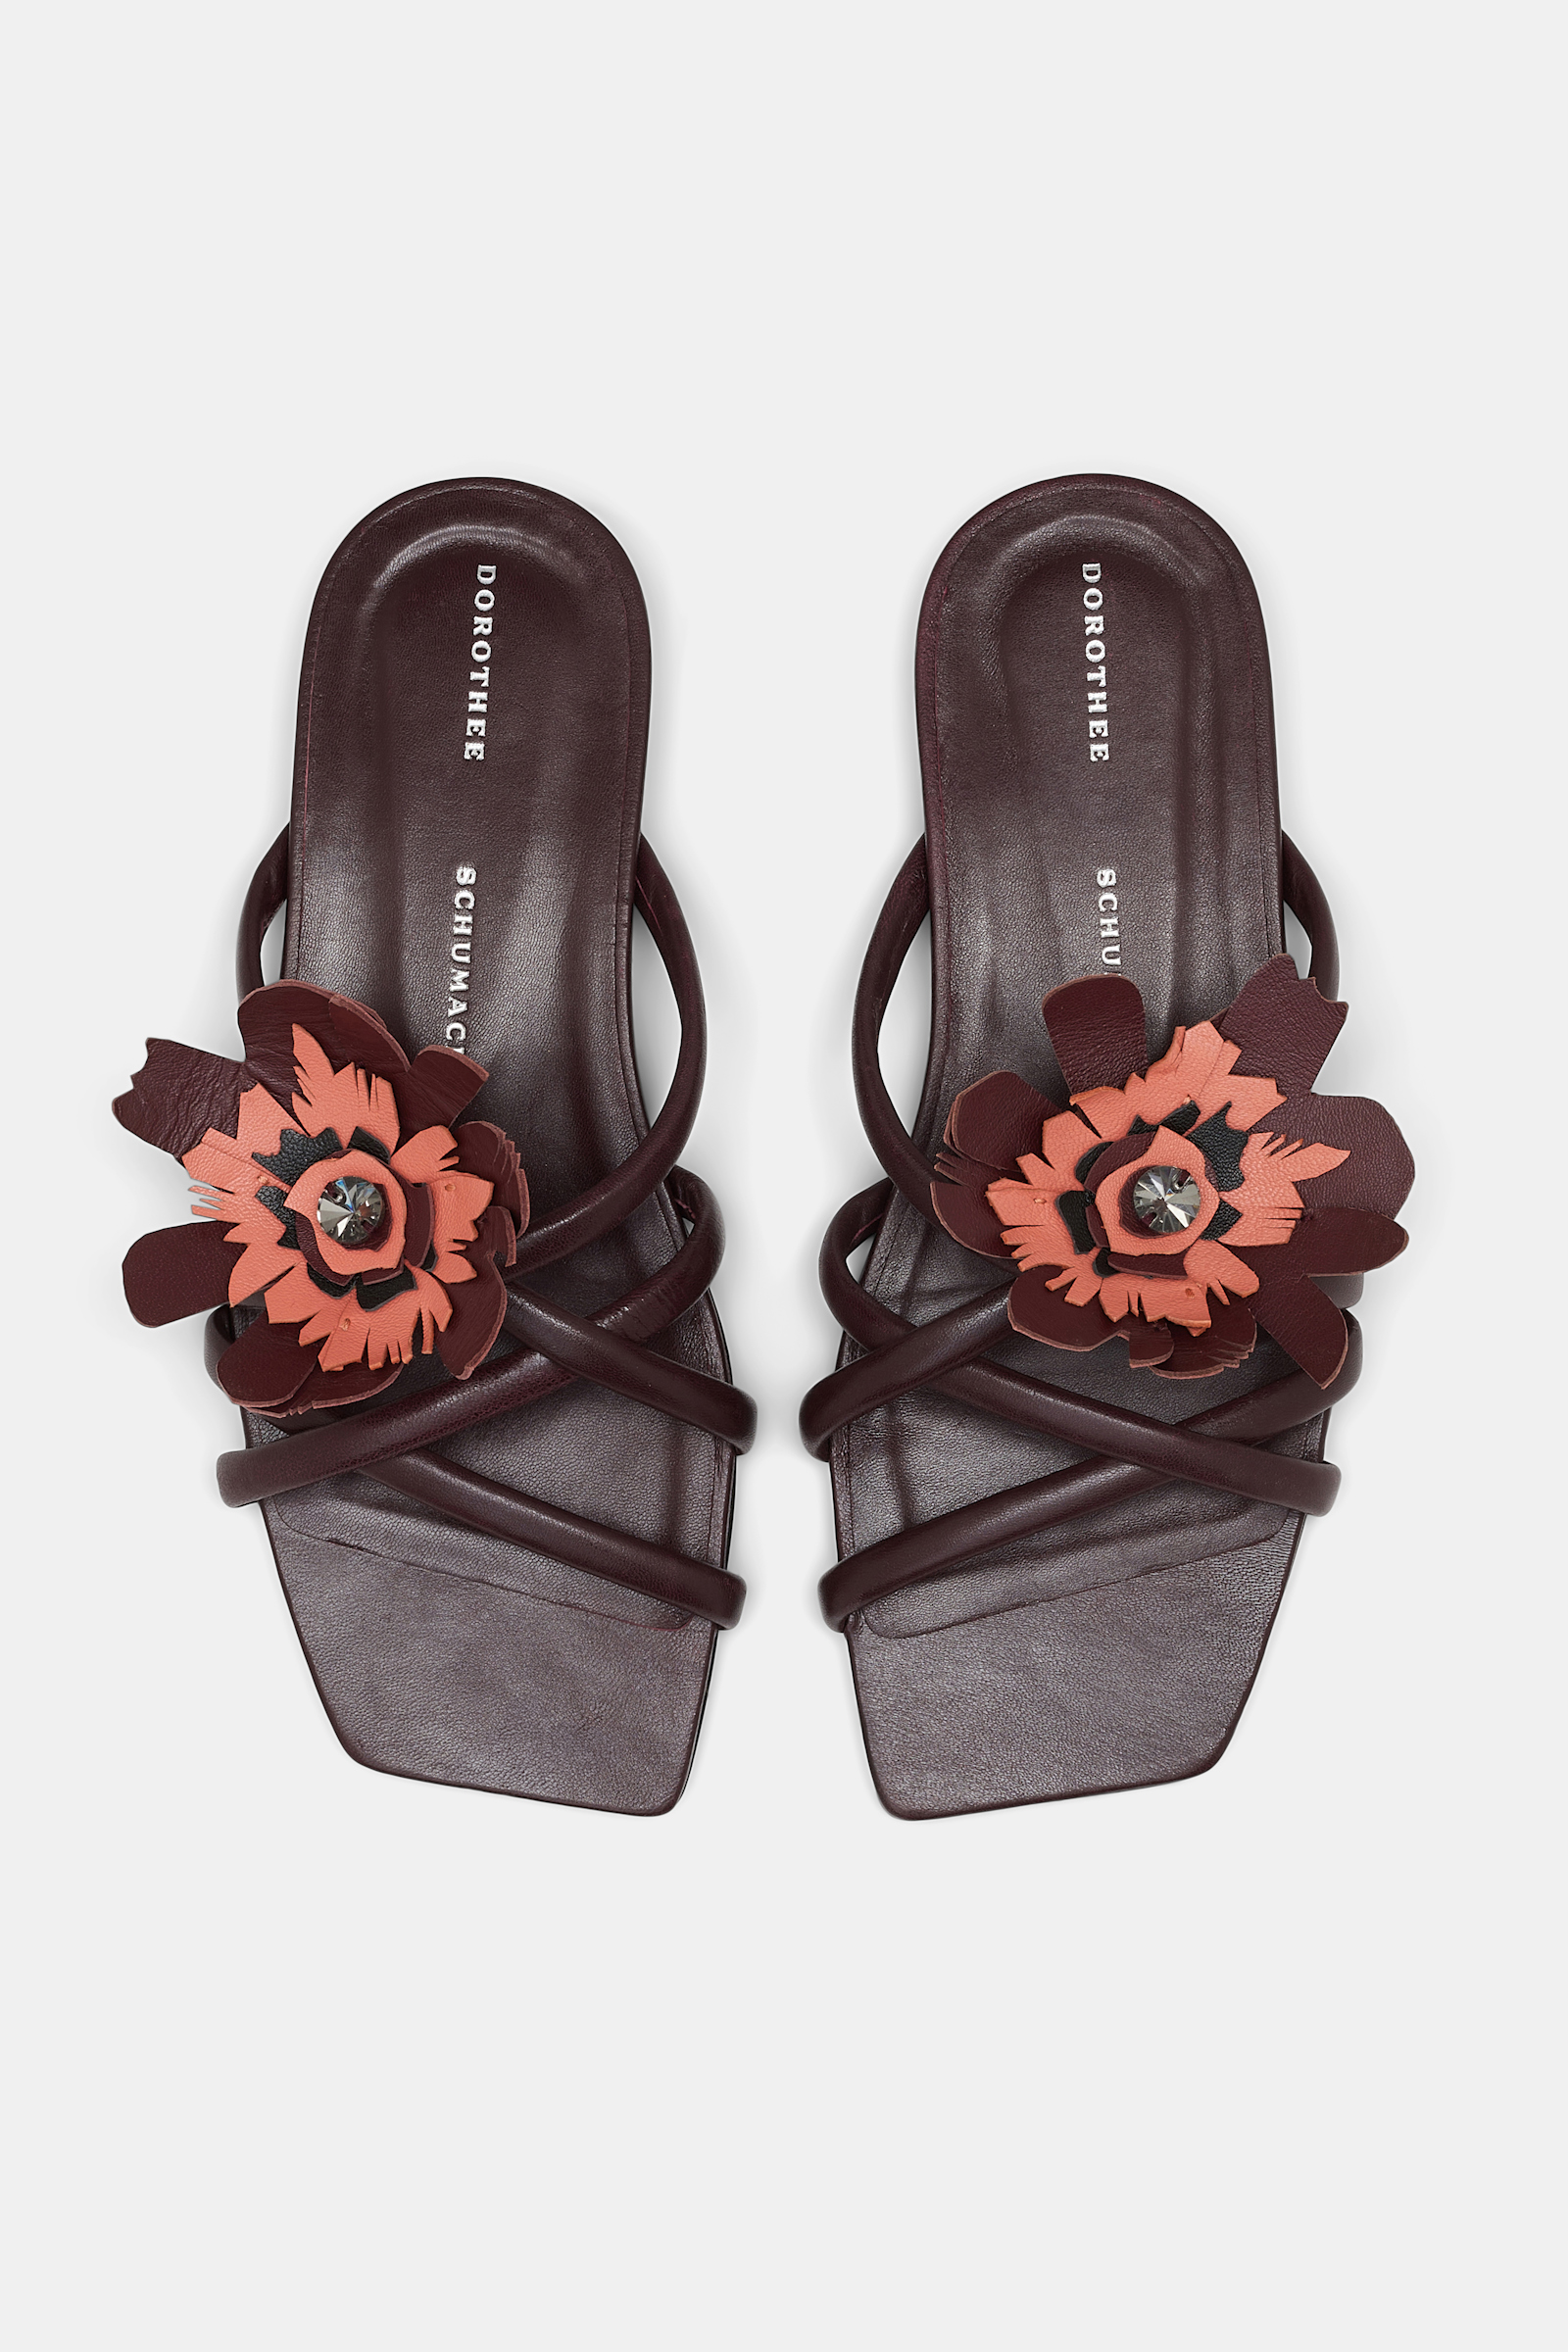 Dorothee Schumacher Flache Sandalen mit abnehmbarer Blume bordeaux